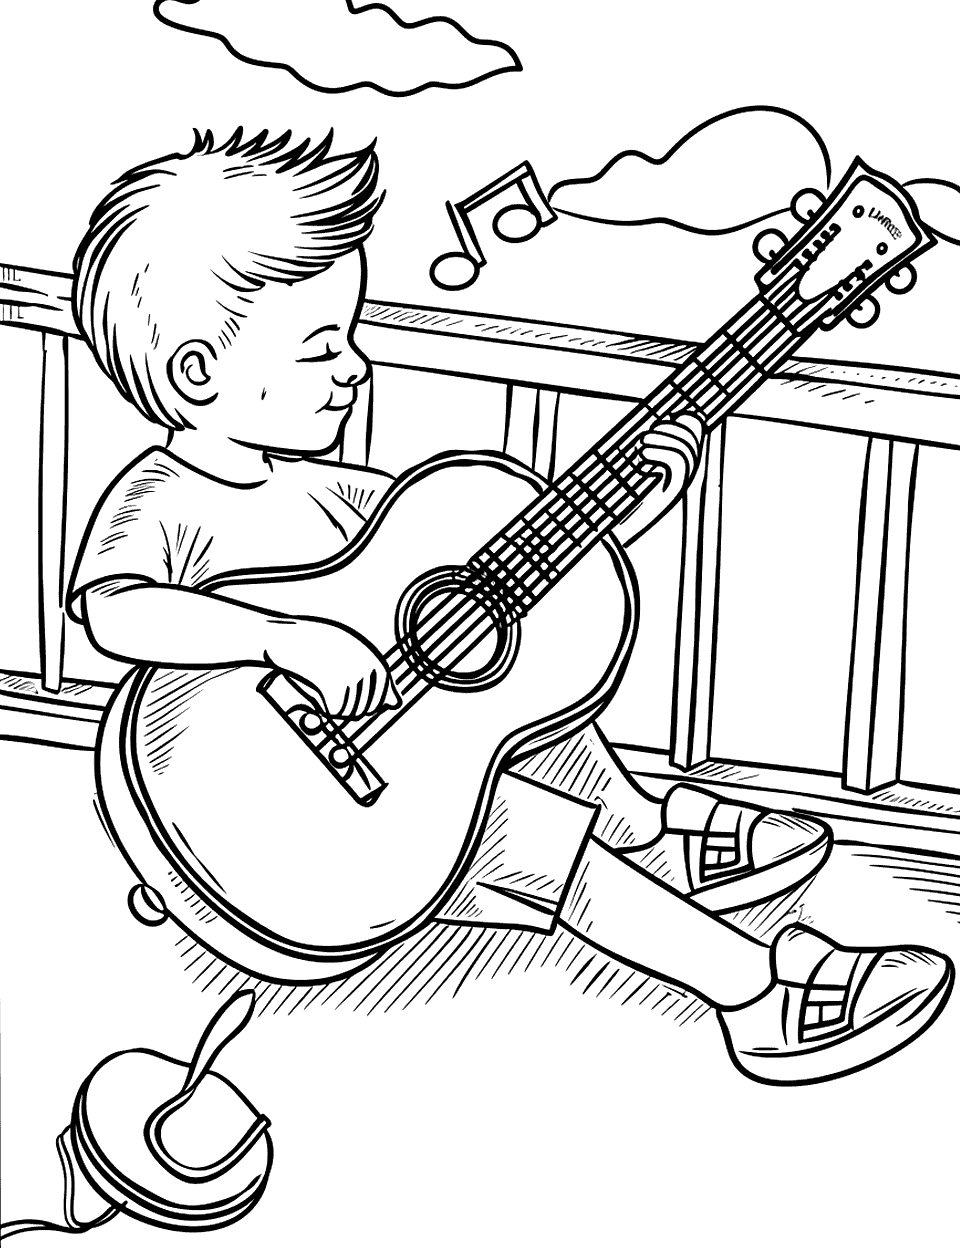 Ukulele on the Balcony Music Coloring Page - A child playing the ukulele on a balcony.